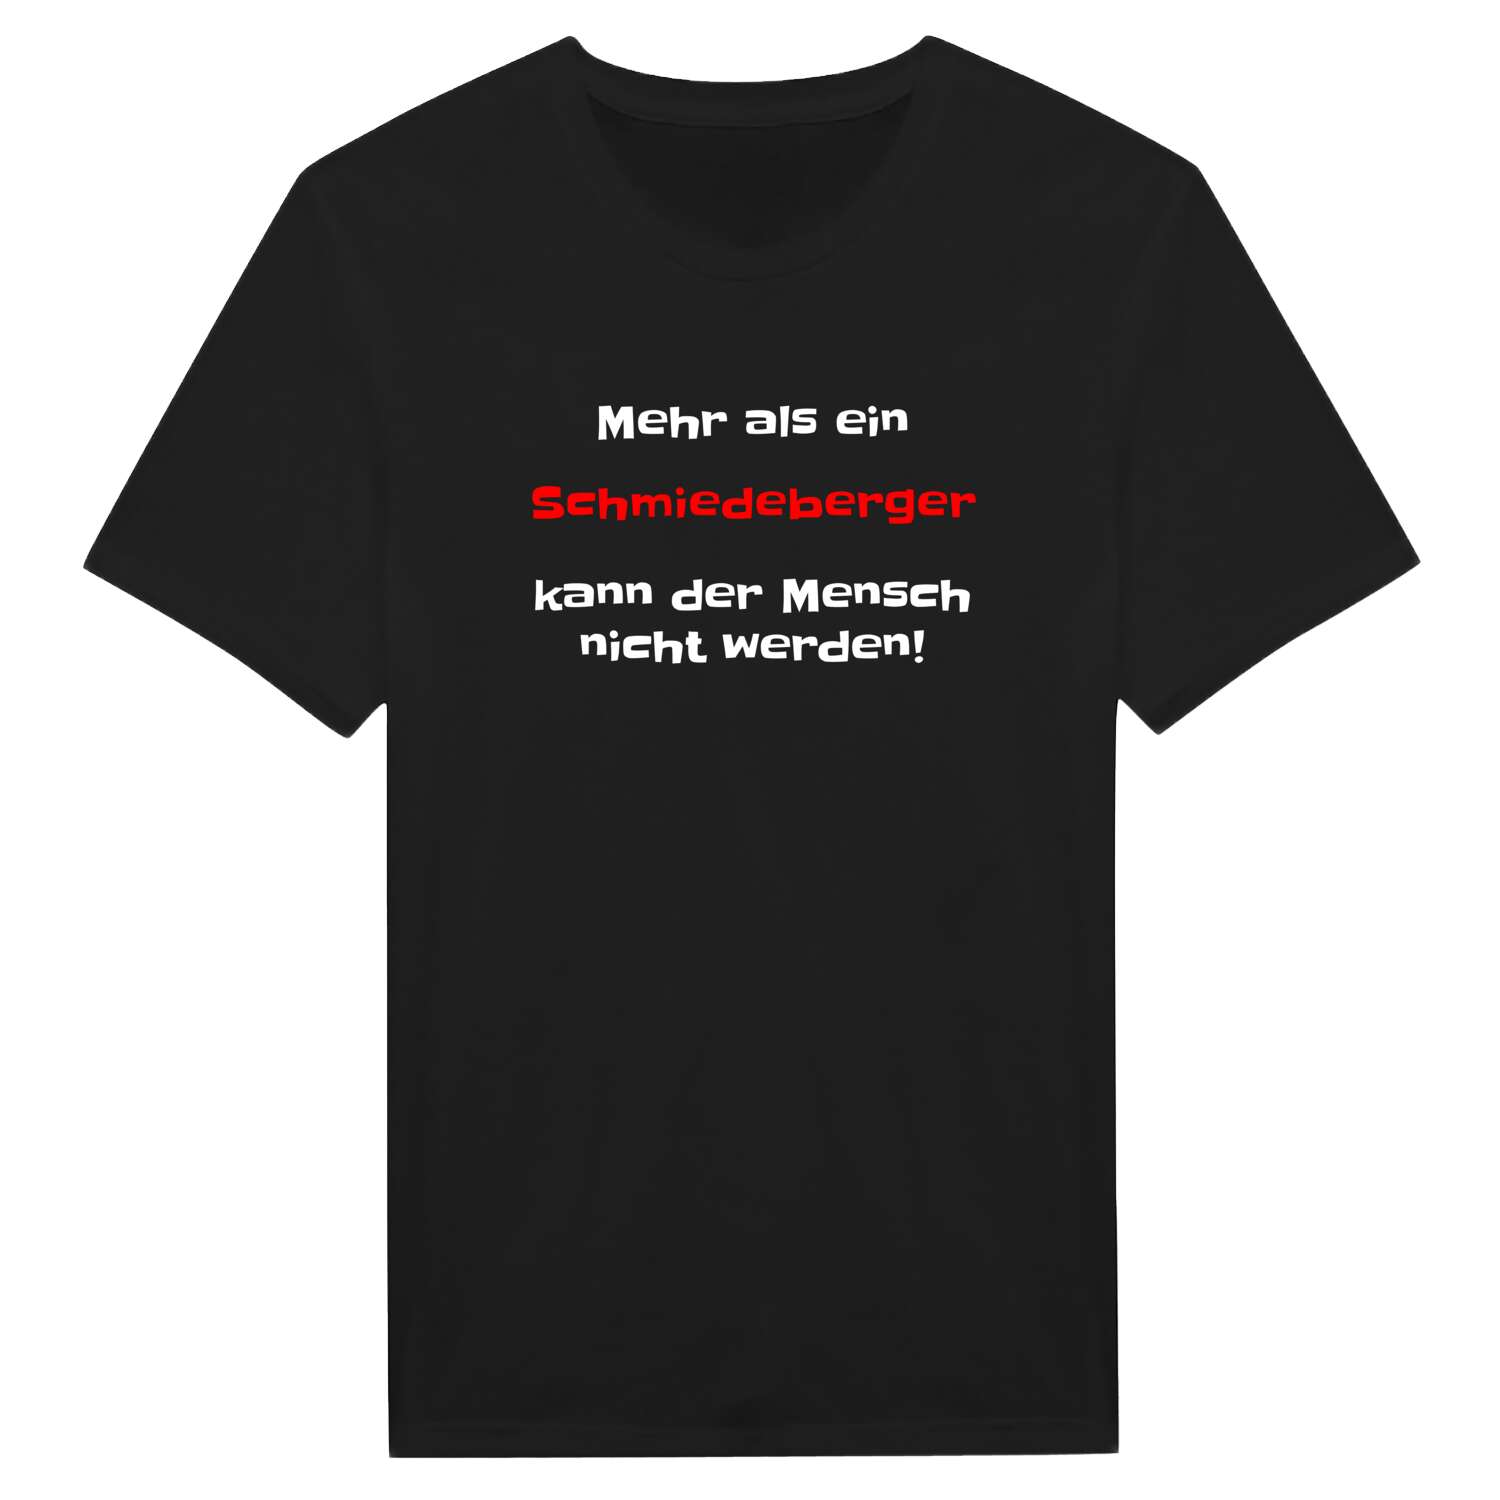 Schmiedeberg T-Shirt »Mehr als ein«